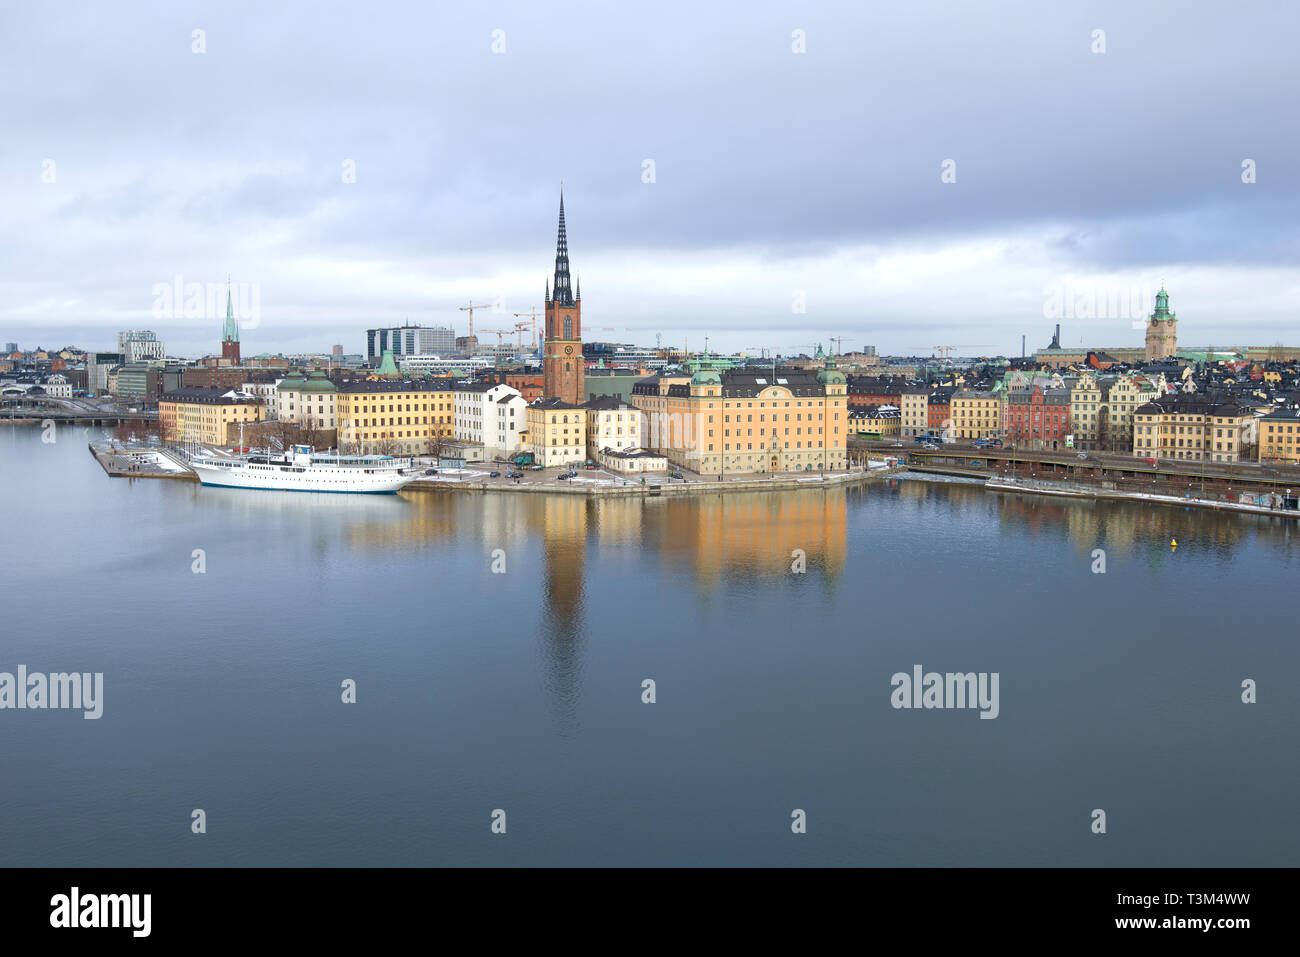 STOCKHOLM, Schweden - MÄRZ 09, 2019: Blick auf Riddarholmen Insel (Knight's Island) an einem bewölkten März Tag Stockfoto